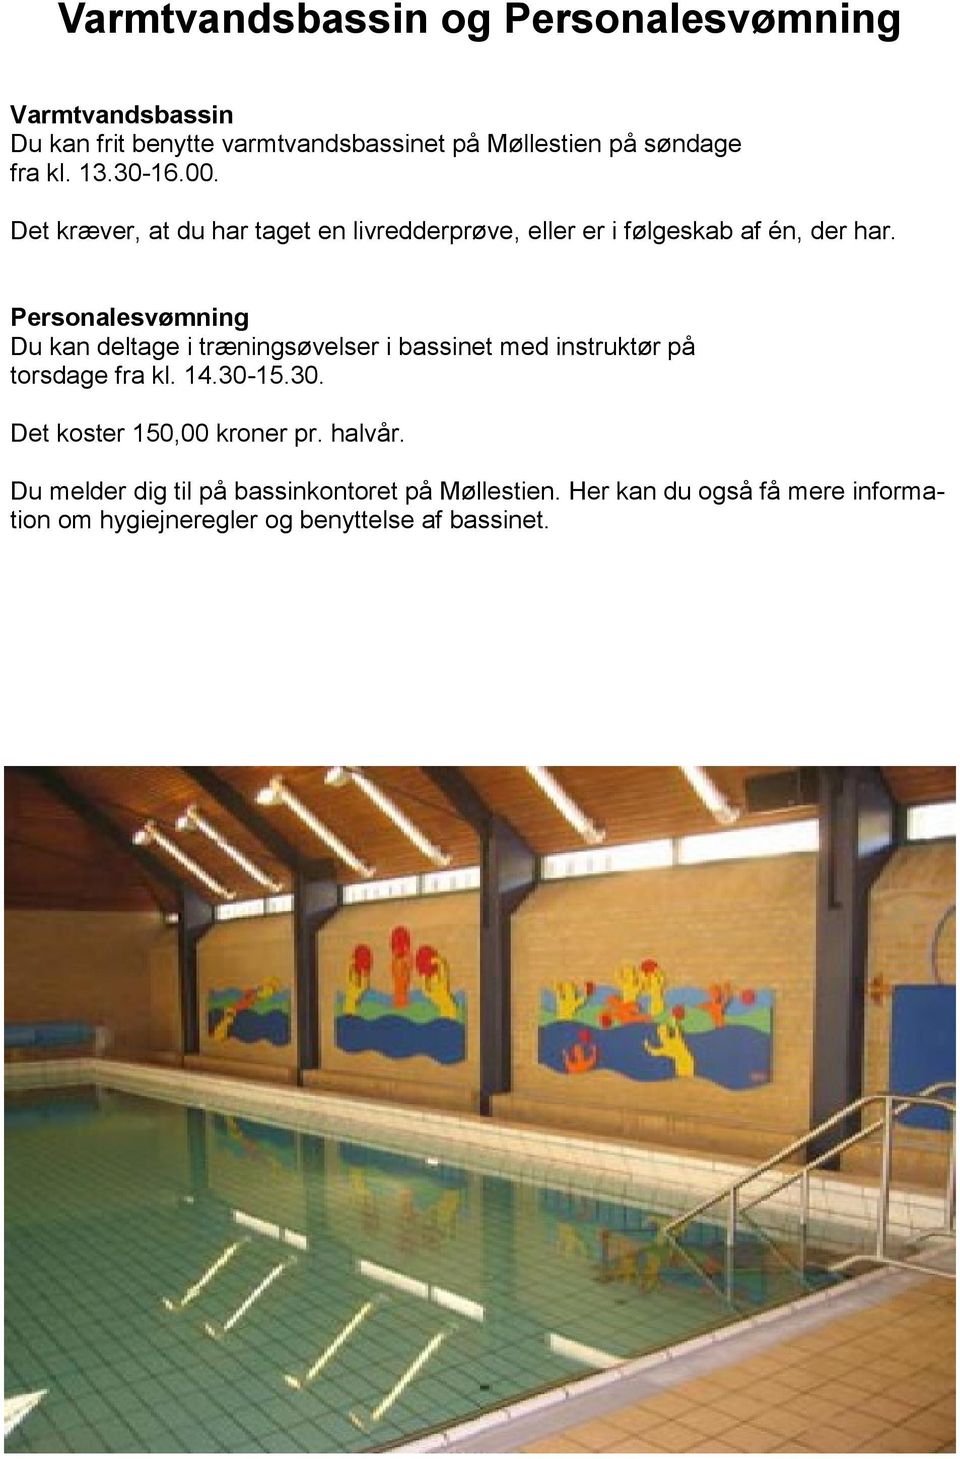 Personalesvømning Du kan deltage i træningsøvelser i bassinet med instruktør på torsdage fra kl. 14.30-